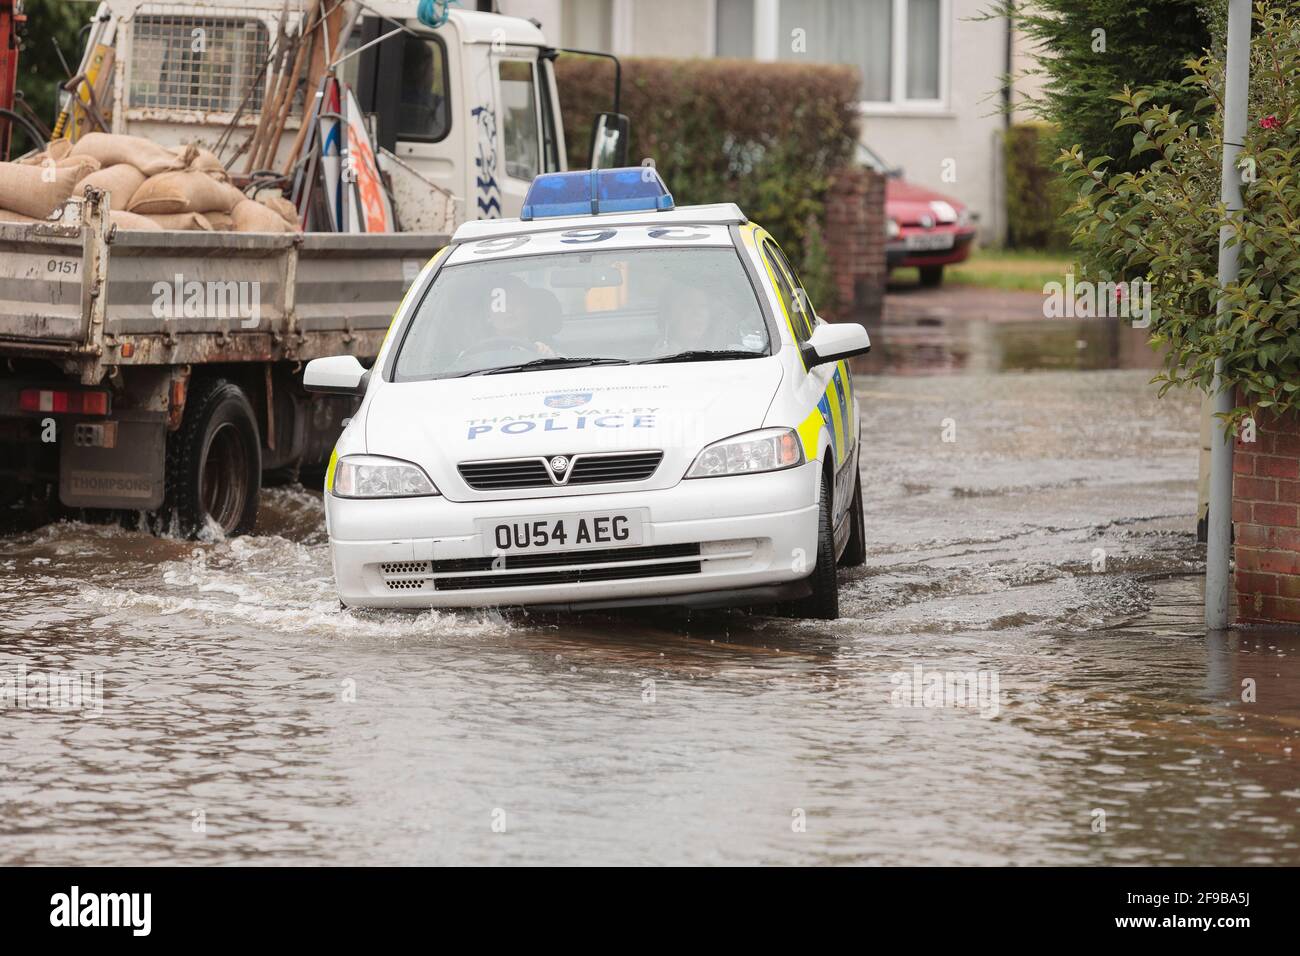 Une voiture de police traversant les eaux d'inondation, Abingdon Road, à l'ouest d'Oxford, après des pluies torrentielles non saisonnières, a conduit à la Tamise et à ses affluents à briser leurs berges. 250 maisons dans la région d'Abingdon et de Botley Road à l'ouest d'Oxford où il a été évacué. Abingdon Road, Oxford, Royaume-Uni. 23 juillet 2007 Banque D'Images